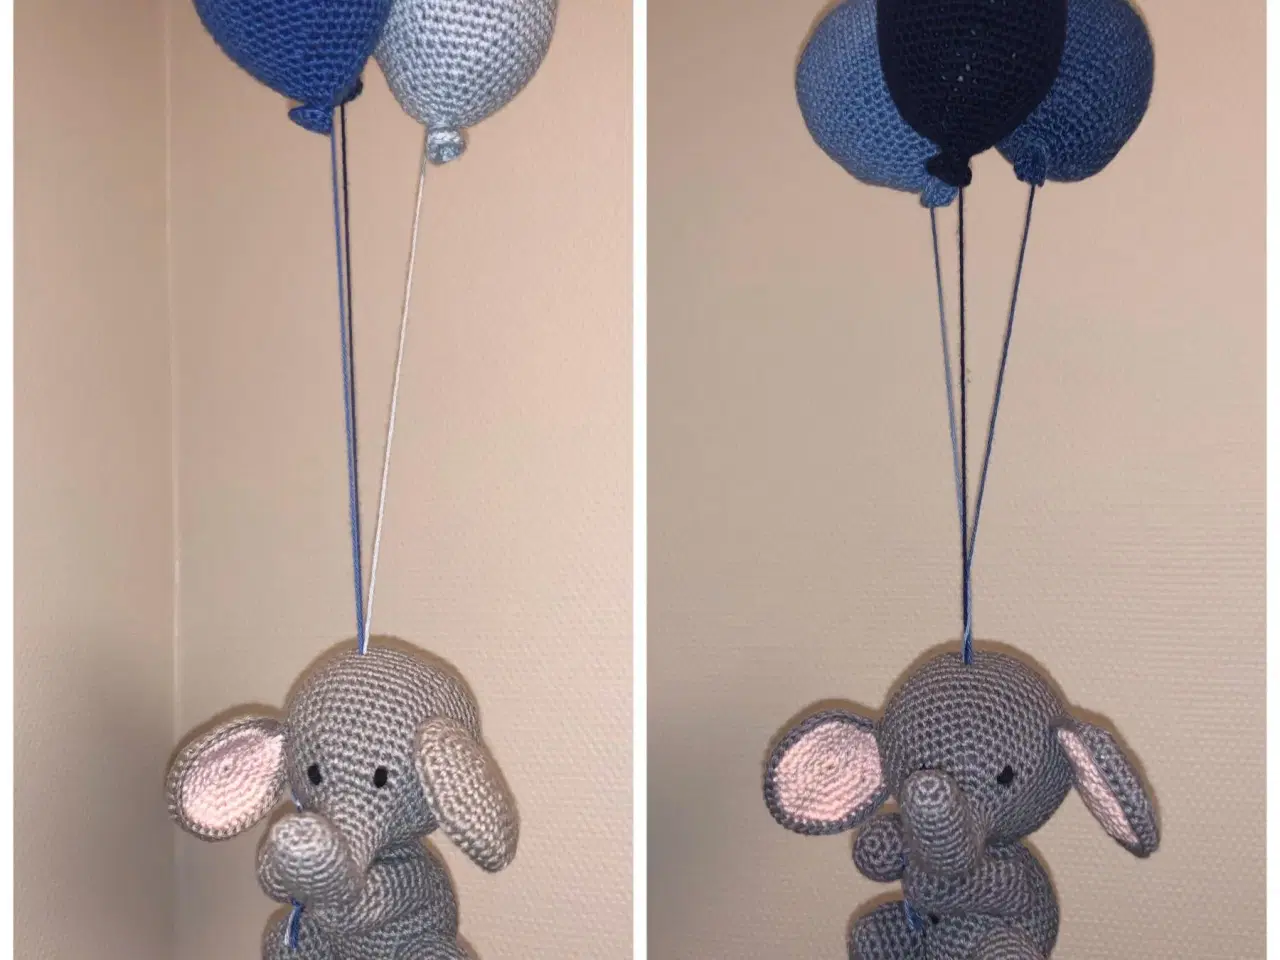 Billede 1 - Hæklet elefant med balloner